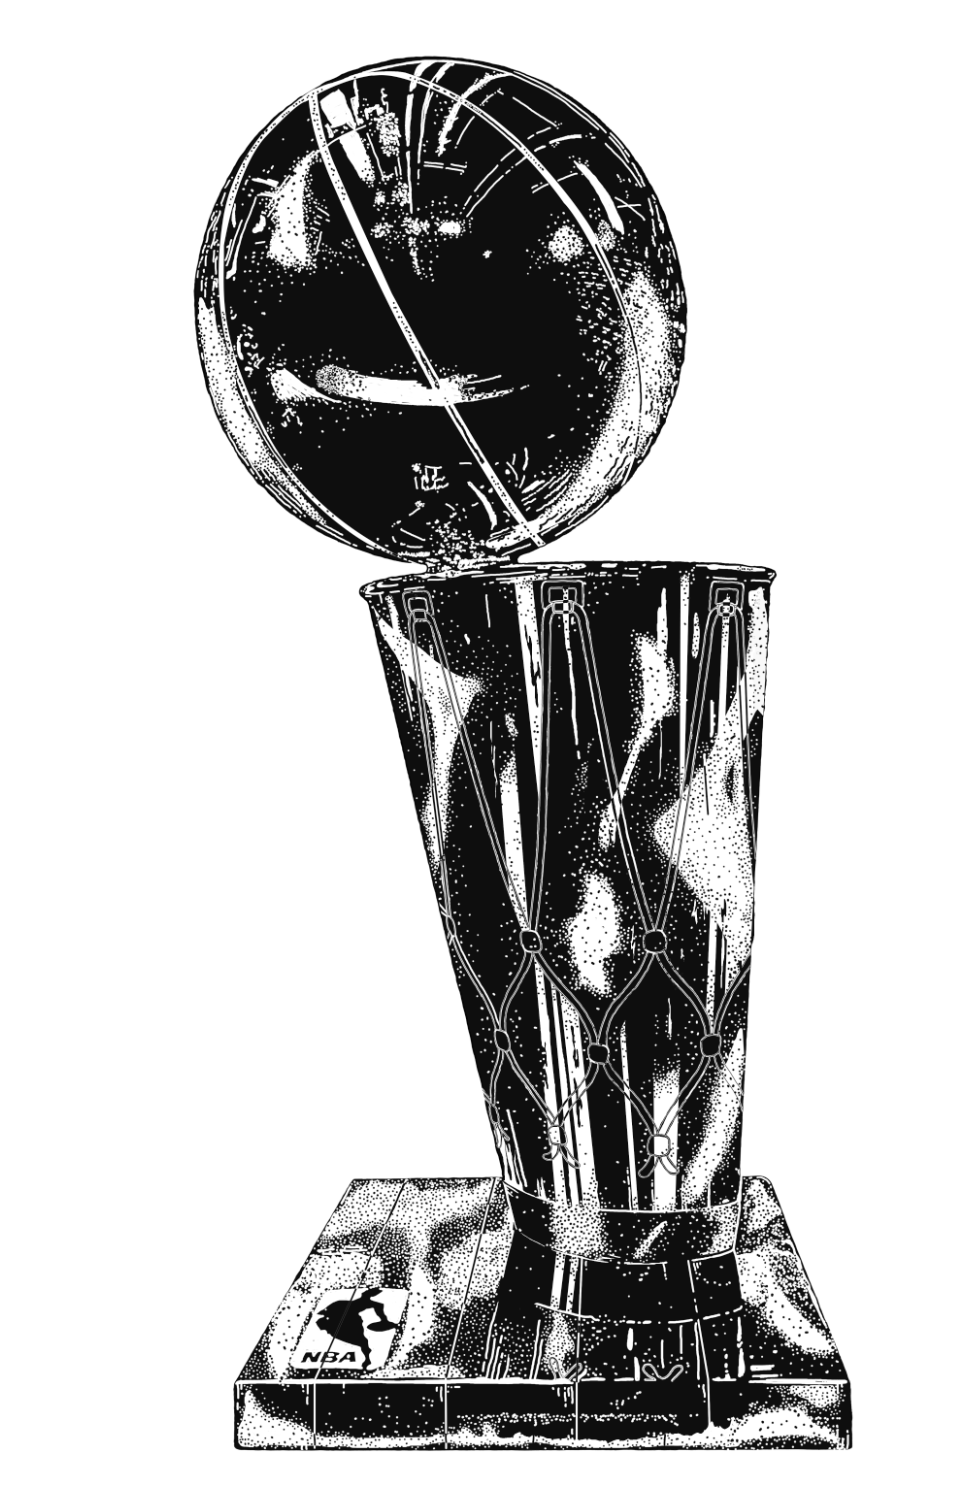 nba finals trophy drawing